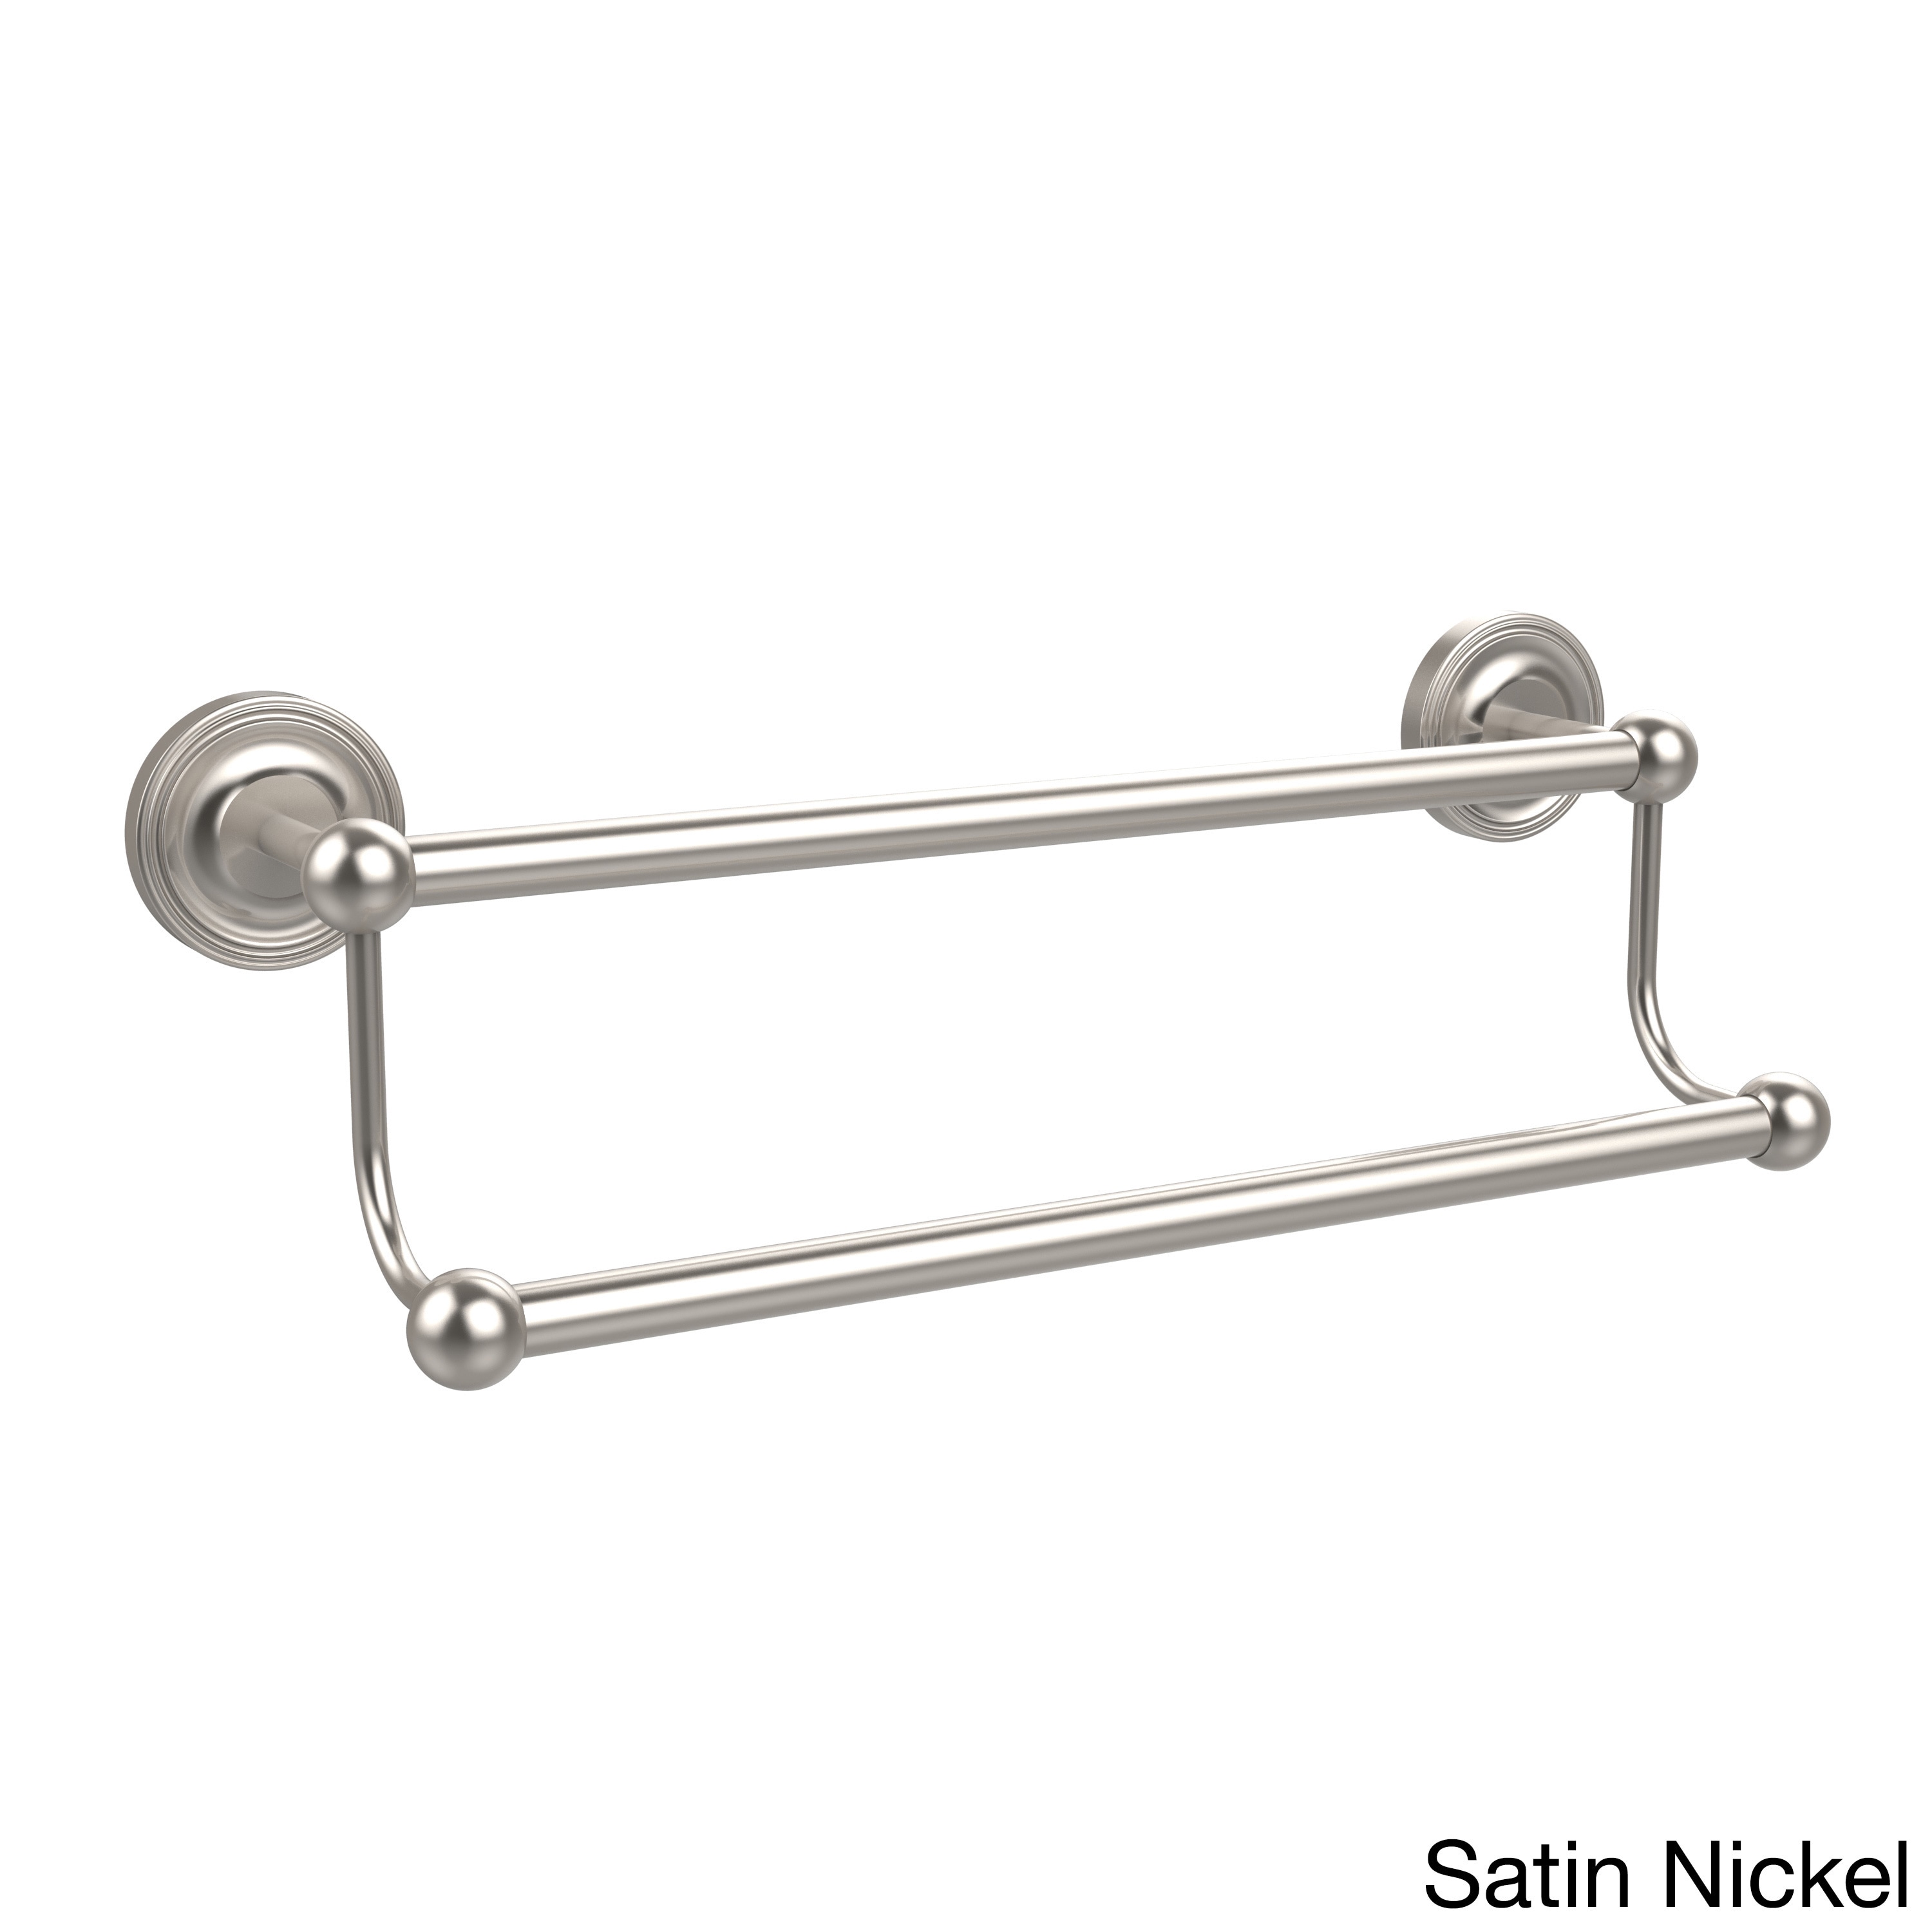 Regal Satin Nickel Bathroom Hardware 4 Piece Set Bath Room Accessories 